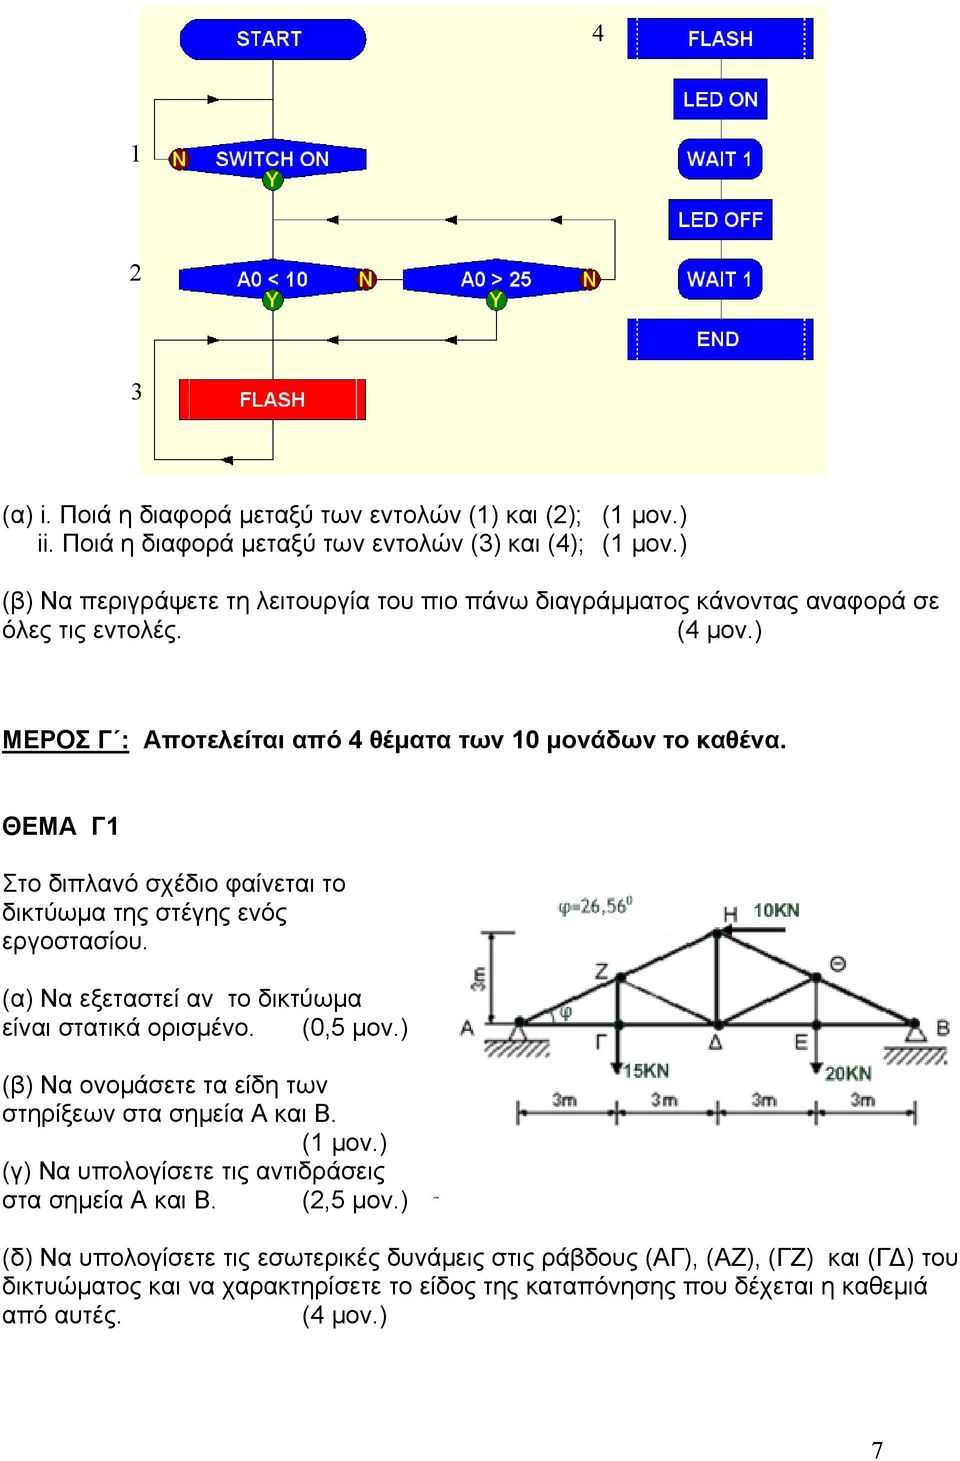 ) ΜΕΡΟΣ Γ : Αποτελείται από 4 θέματα των 10 μονάδων το καθένα. ΘΕΜΑ Γ1 Στο διπλανό σχέδιο φαίνεται το δικτύωμα της στέγης ενός εργοστασίου.